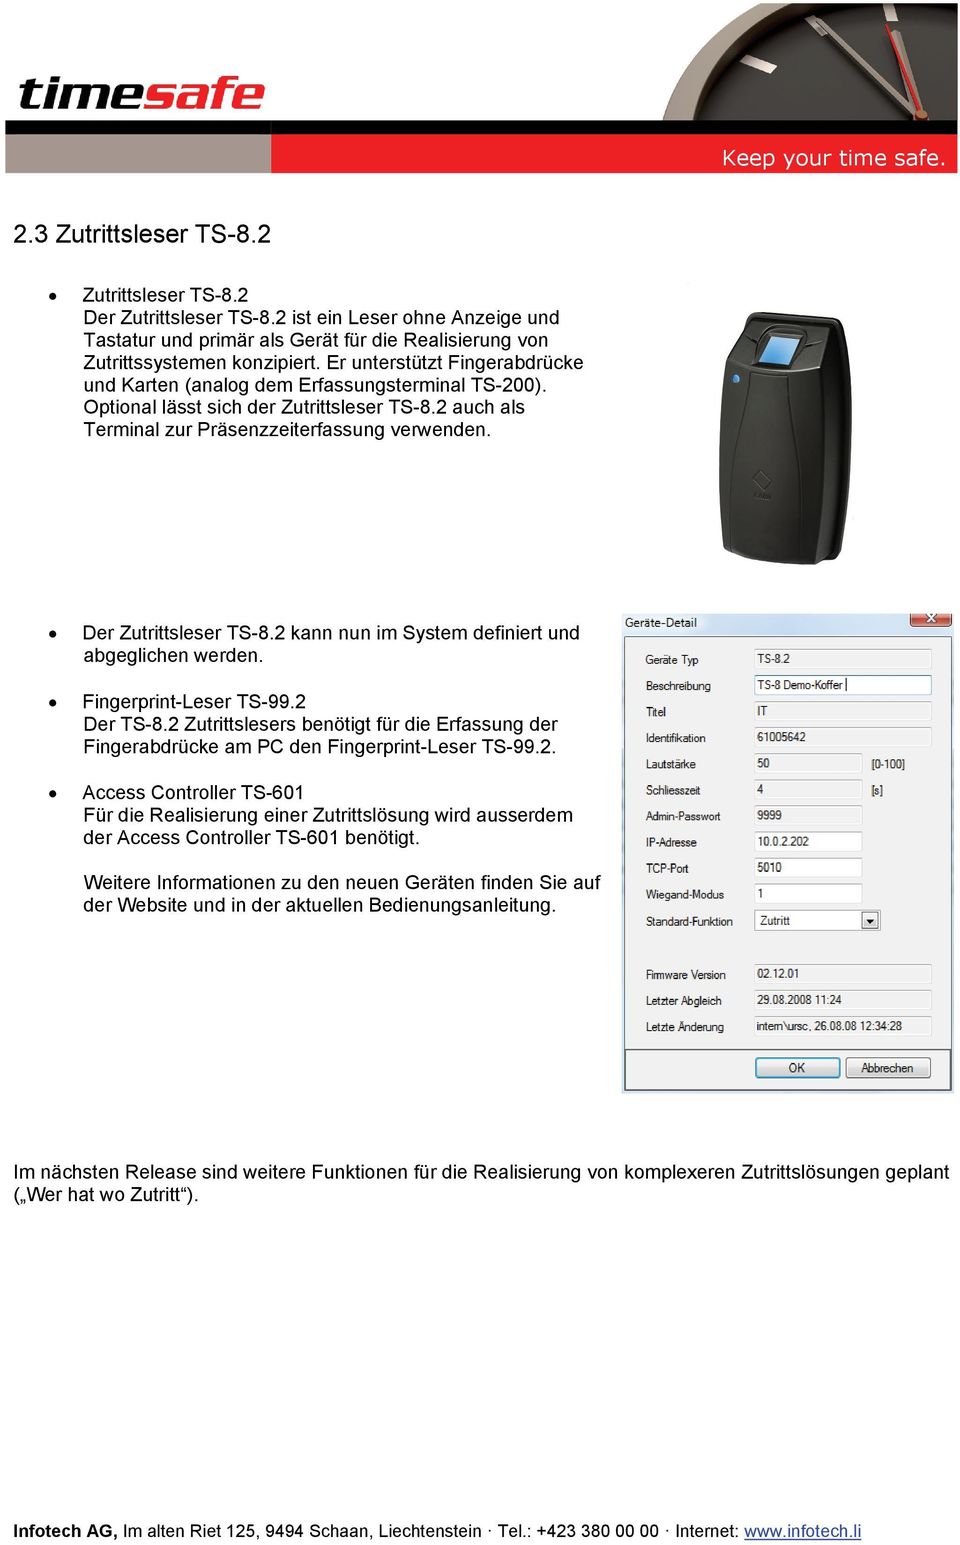 Der Zutrittsleser TS-8.2 kann nun im System definiert und abgeglichen werden. Fingerprint-Leser TS-99.2 Der TS-8.